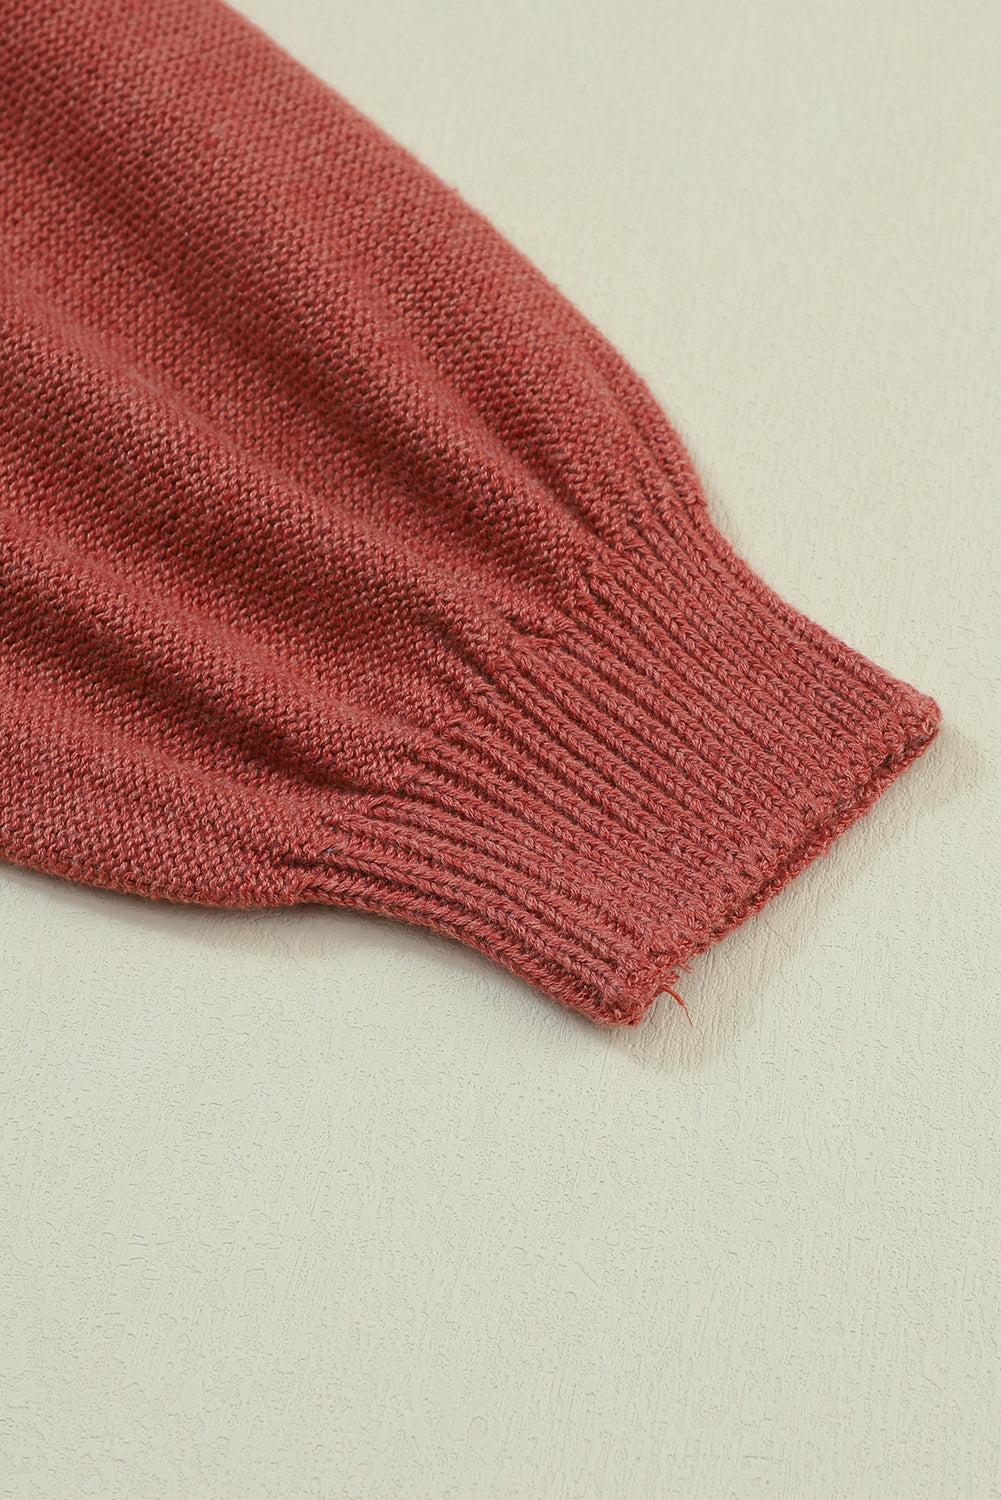 Rosafarbener Colorblock-Pullover mit gerippten Ärmeln und Bischofsärmeln